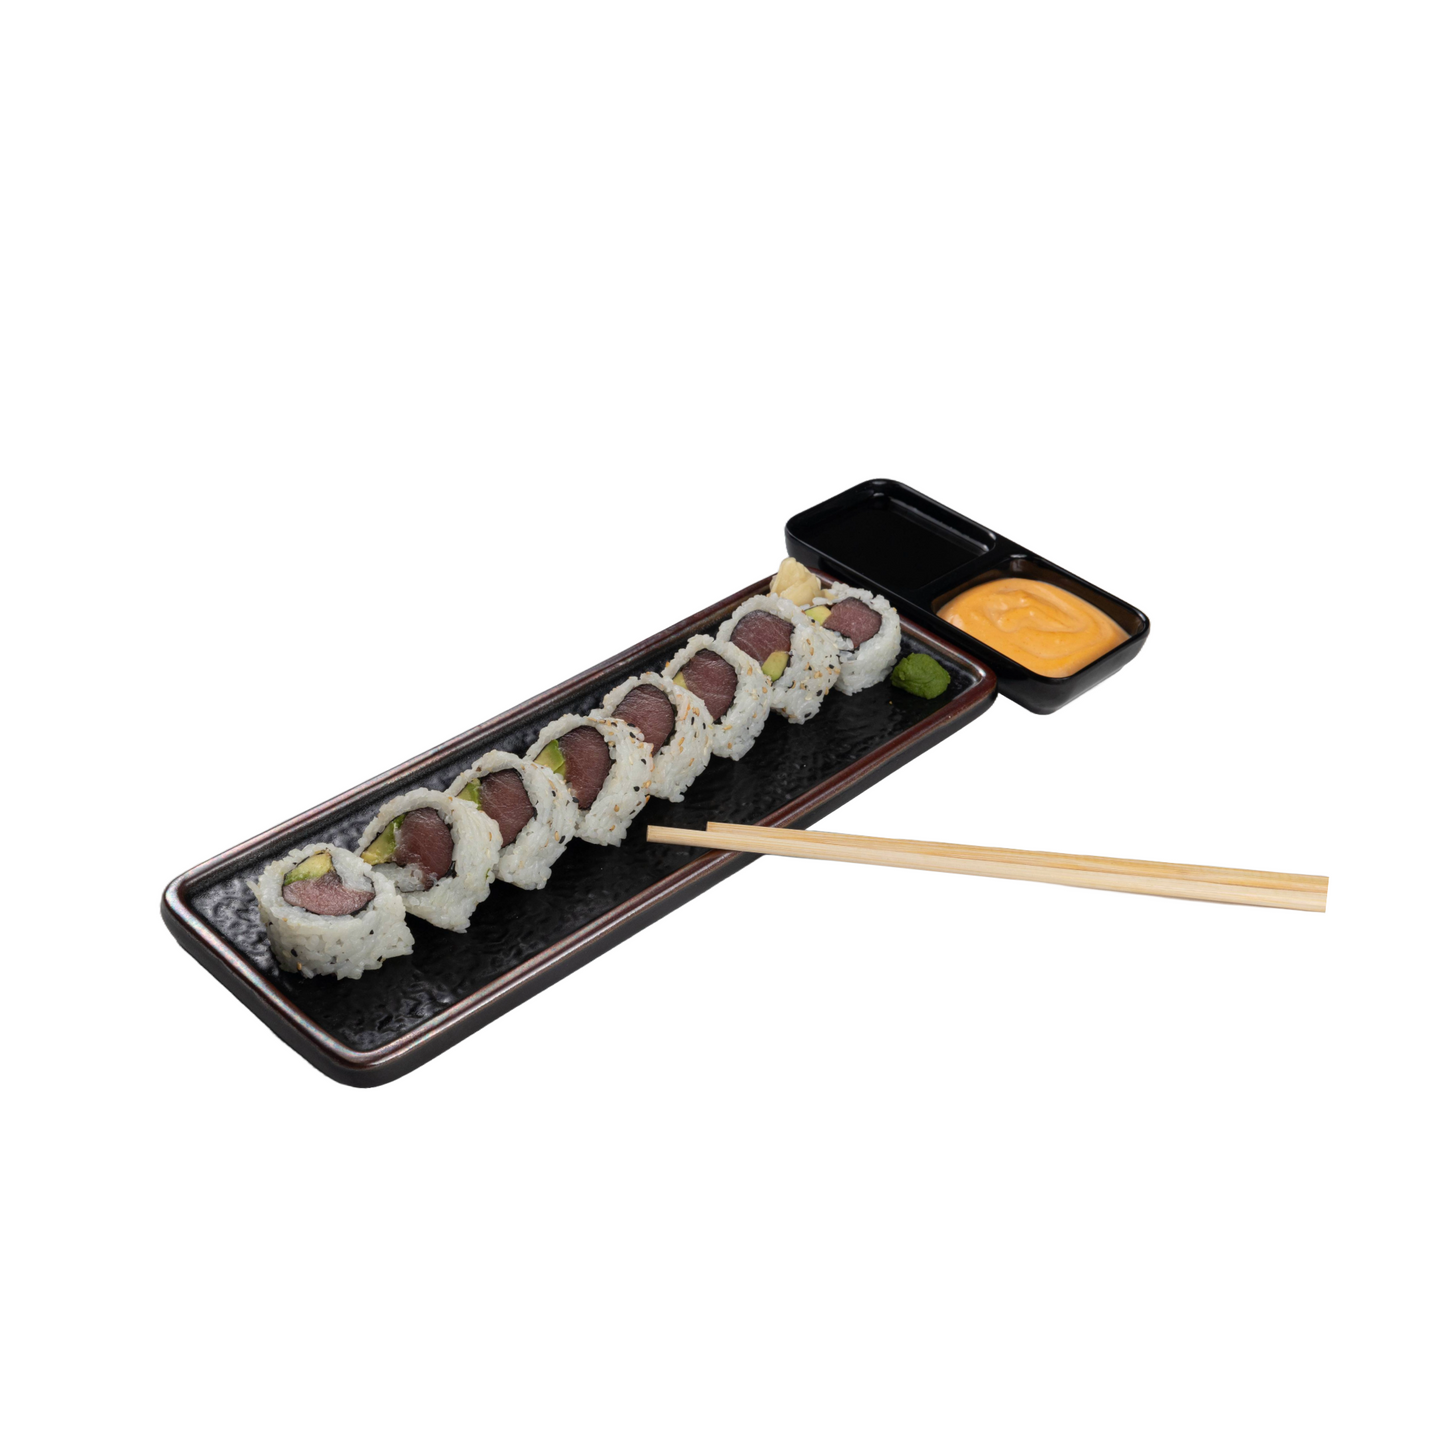 Sushi Basic Platter-6 Rolls 48pcs